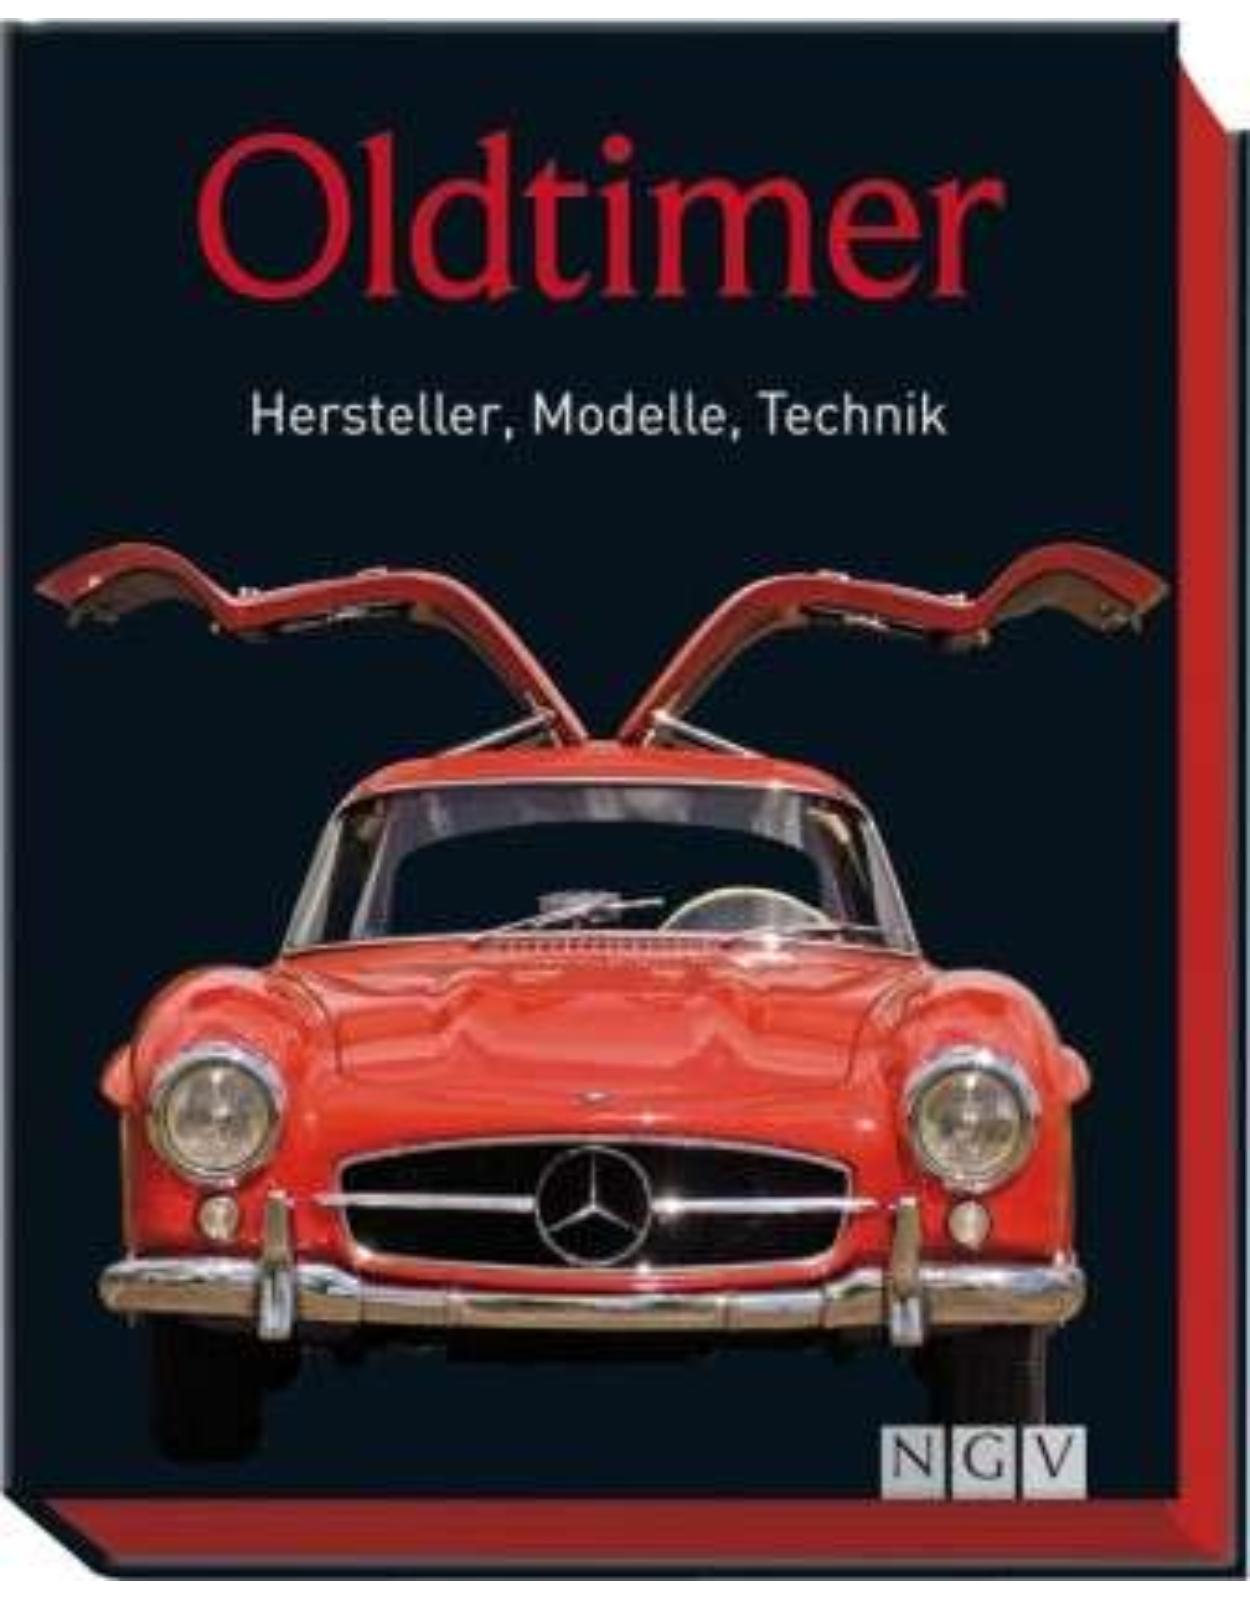 Oldtimer: Hersteller, Modelle, Technik